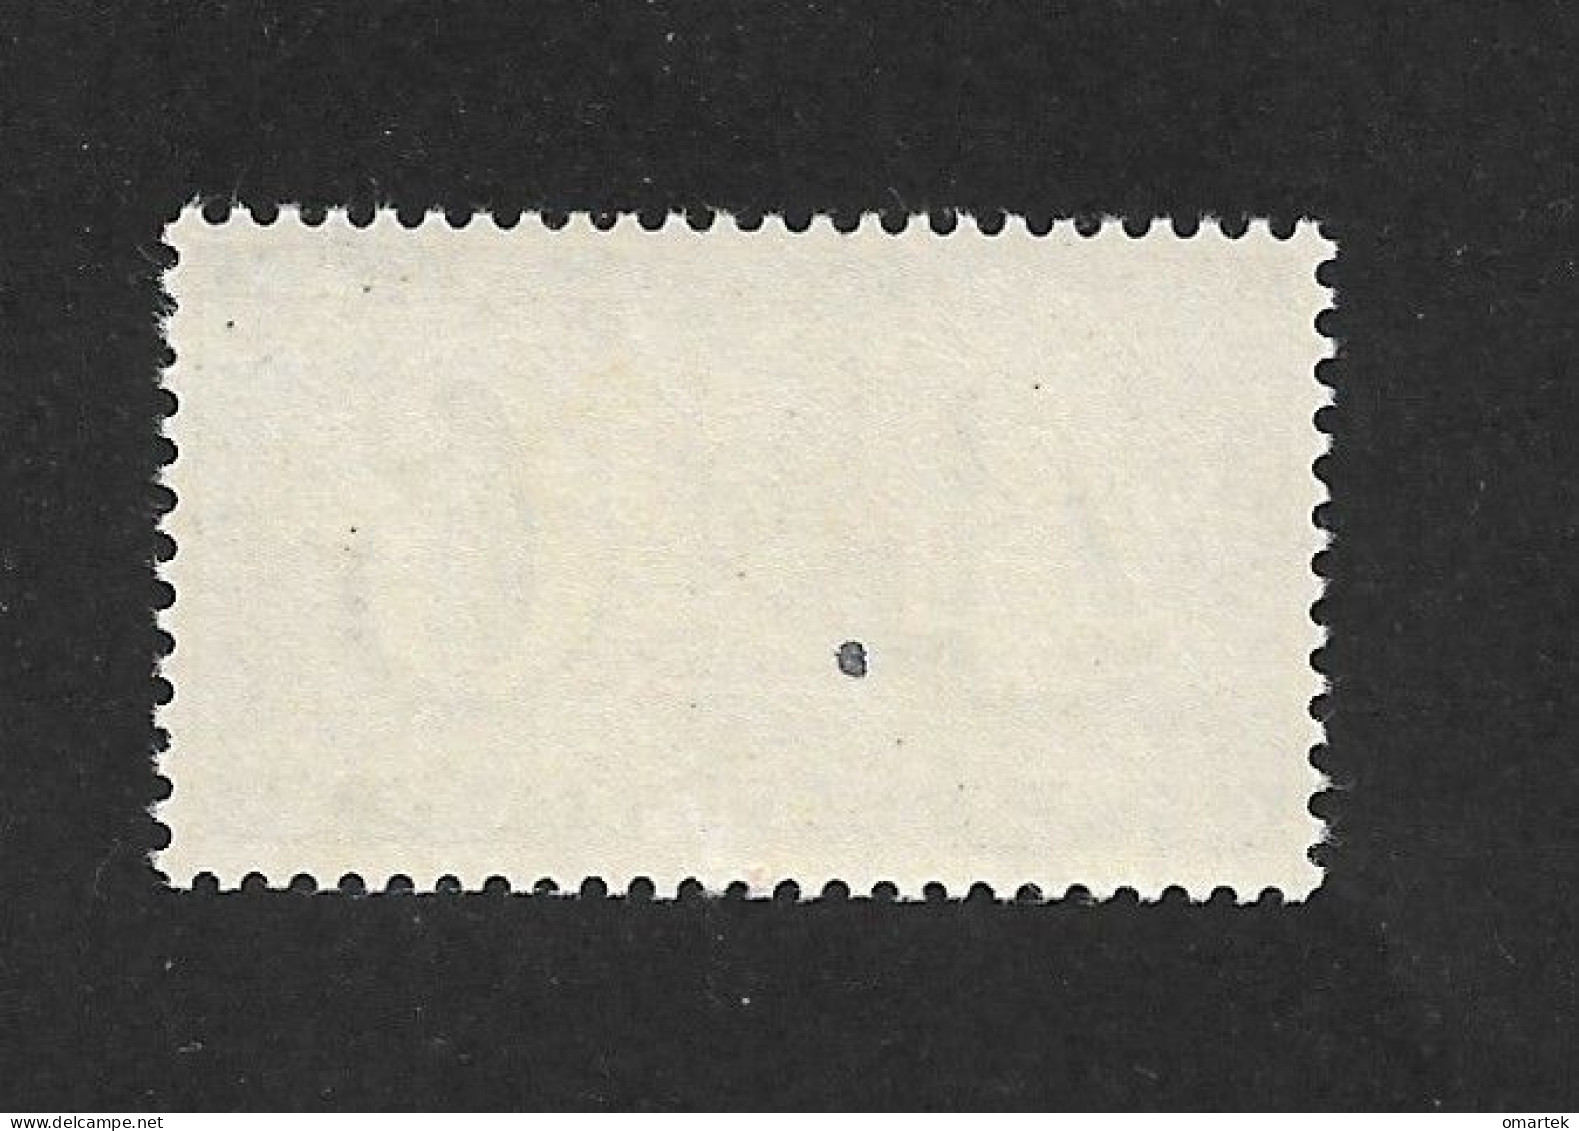 Schweiz Switzerland Helvetia 1943 MNH Mi 416 Sc 287 Zu 258 Yt 384 Stamp Jubilee.. - Nuevos